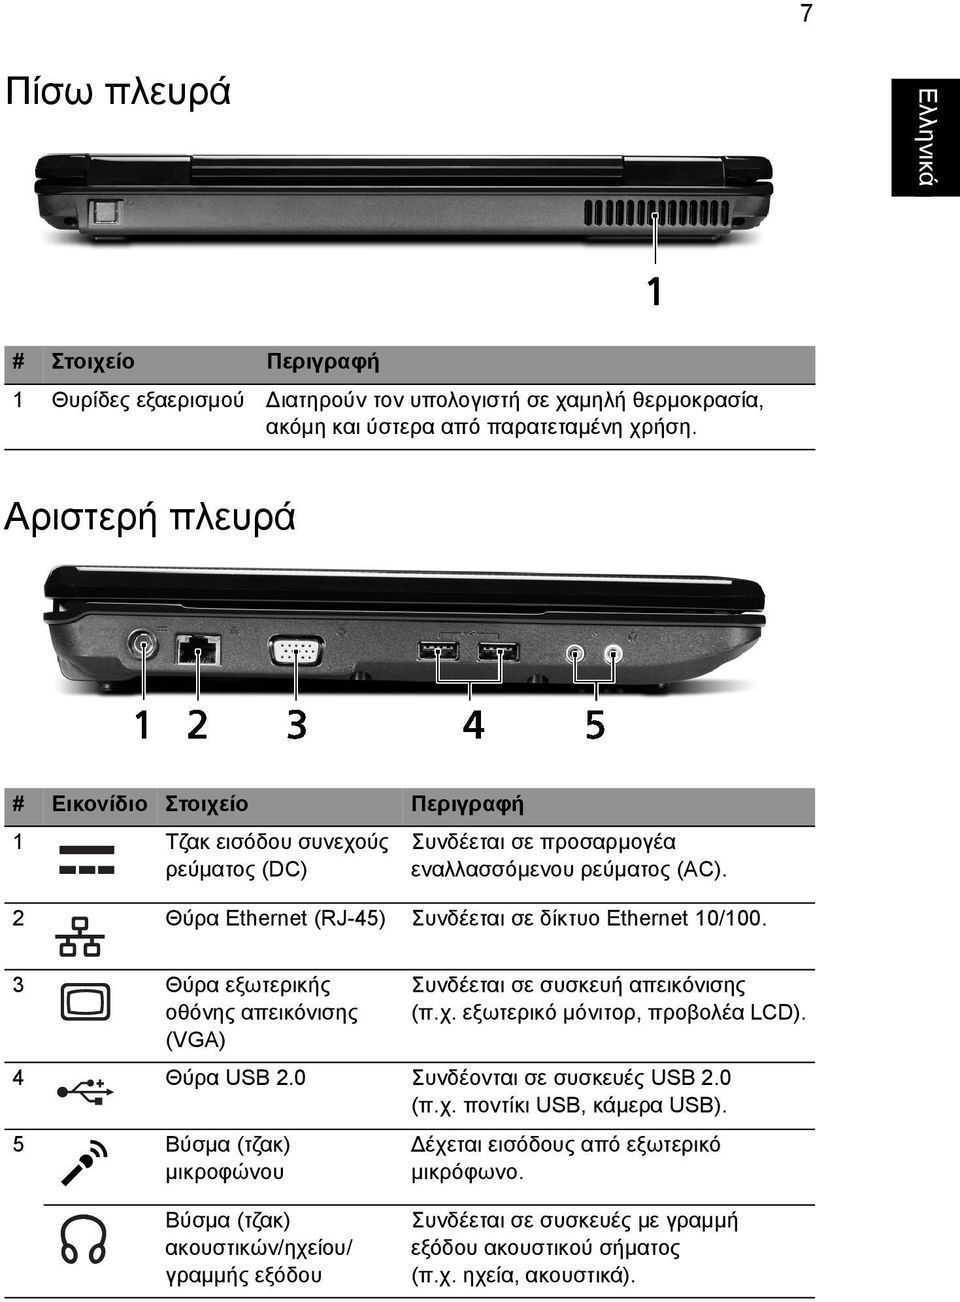 3 Θύρα εξωτερικής οθόνης απεικόνισης (VGA) Συνδέεται σε συσκευή απεικόνισης (π.χ. εξωτερικό µόνιτορ, προβολέα LCD). 4 Θύρα USB 2.0 Συνδέονται σε συσκευές USB 2.0 (π.χ. ποντίκι USB, κάµερα USB).